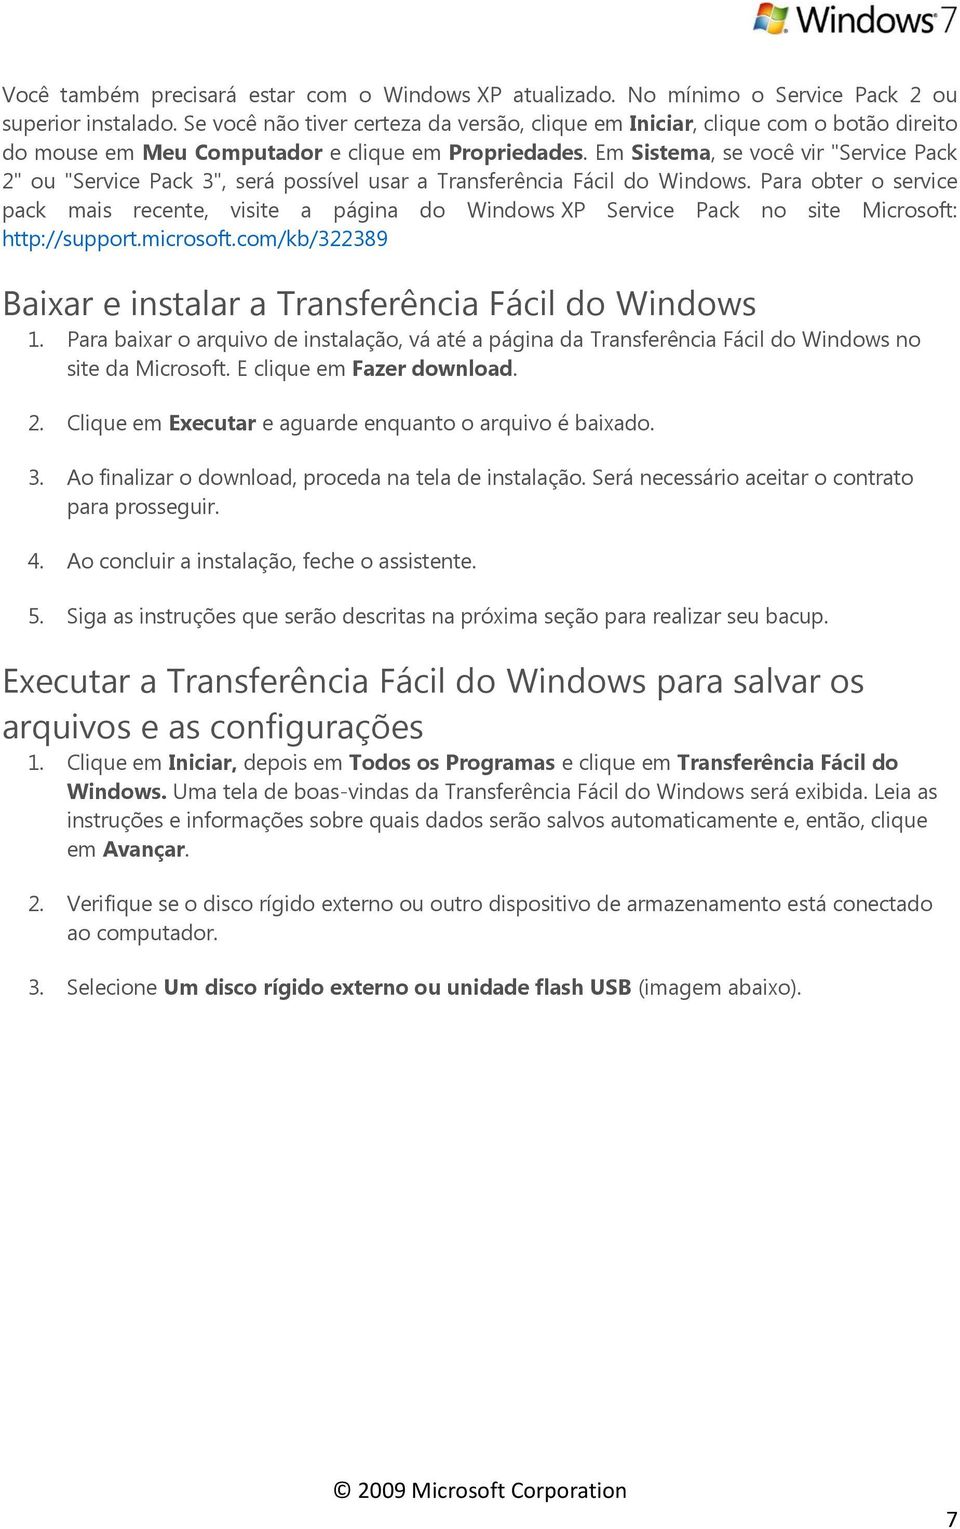 Em Sistema, se você vir "Service Pack 2" ou "Service Pack 3", será possível usar a Transferência Fácil do Windows.